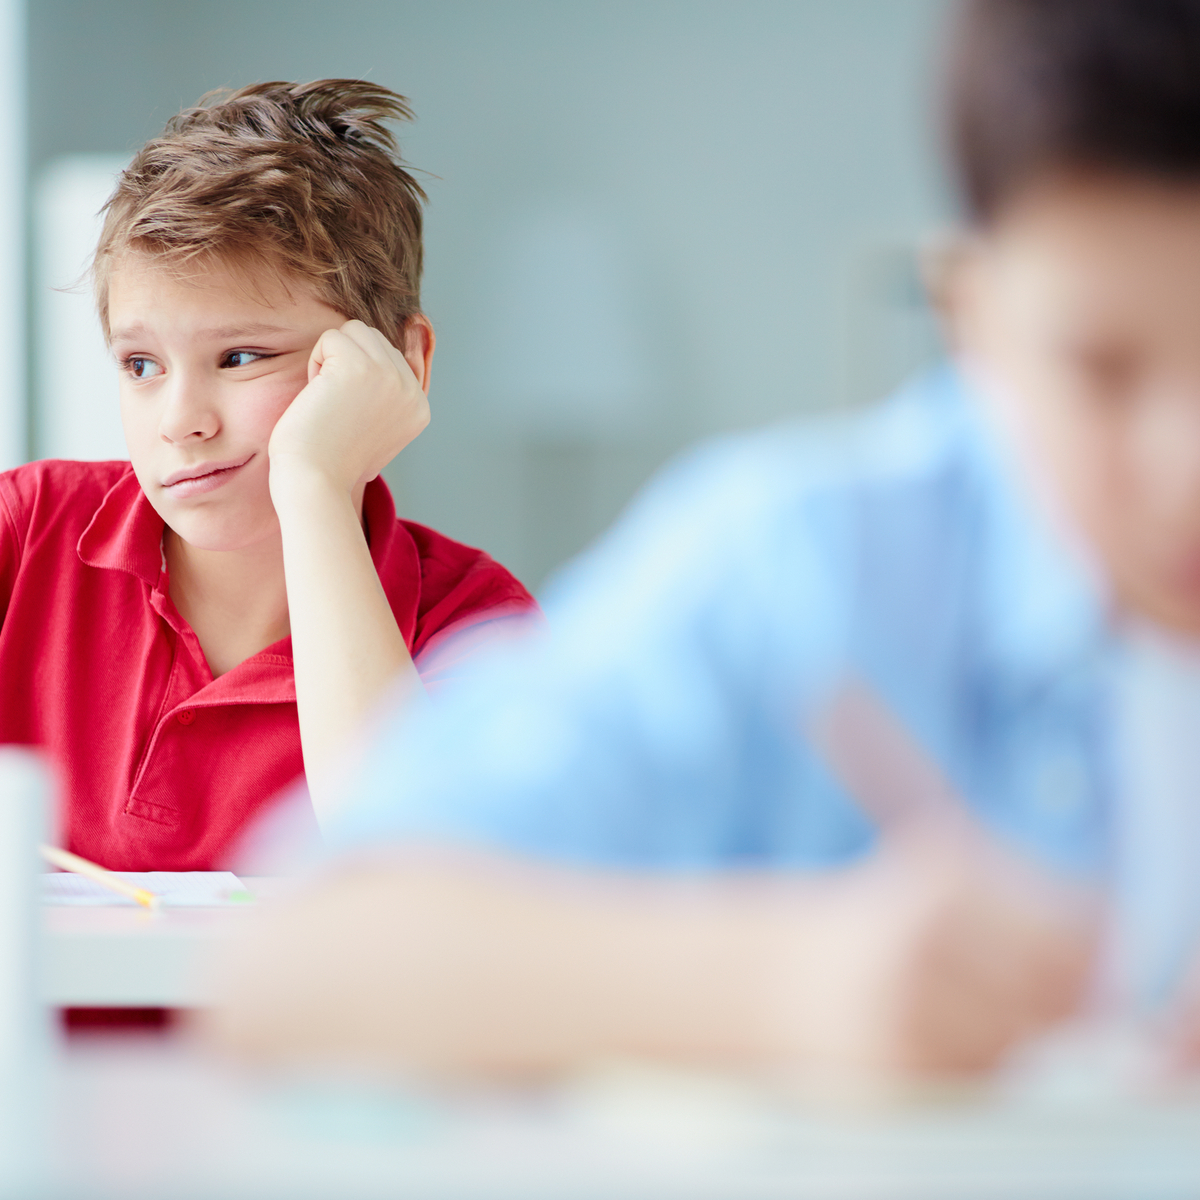 Προβλήματα συμπεριφοράς στο σχολείο, αίτια και στρατηγικές αντιμετώπισης